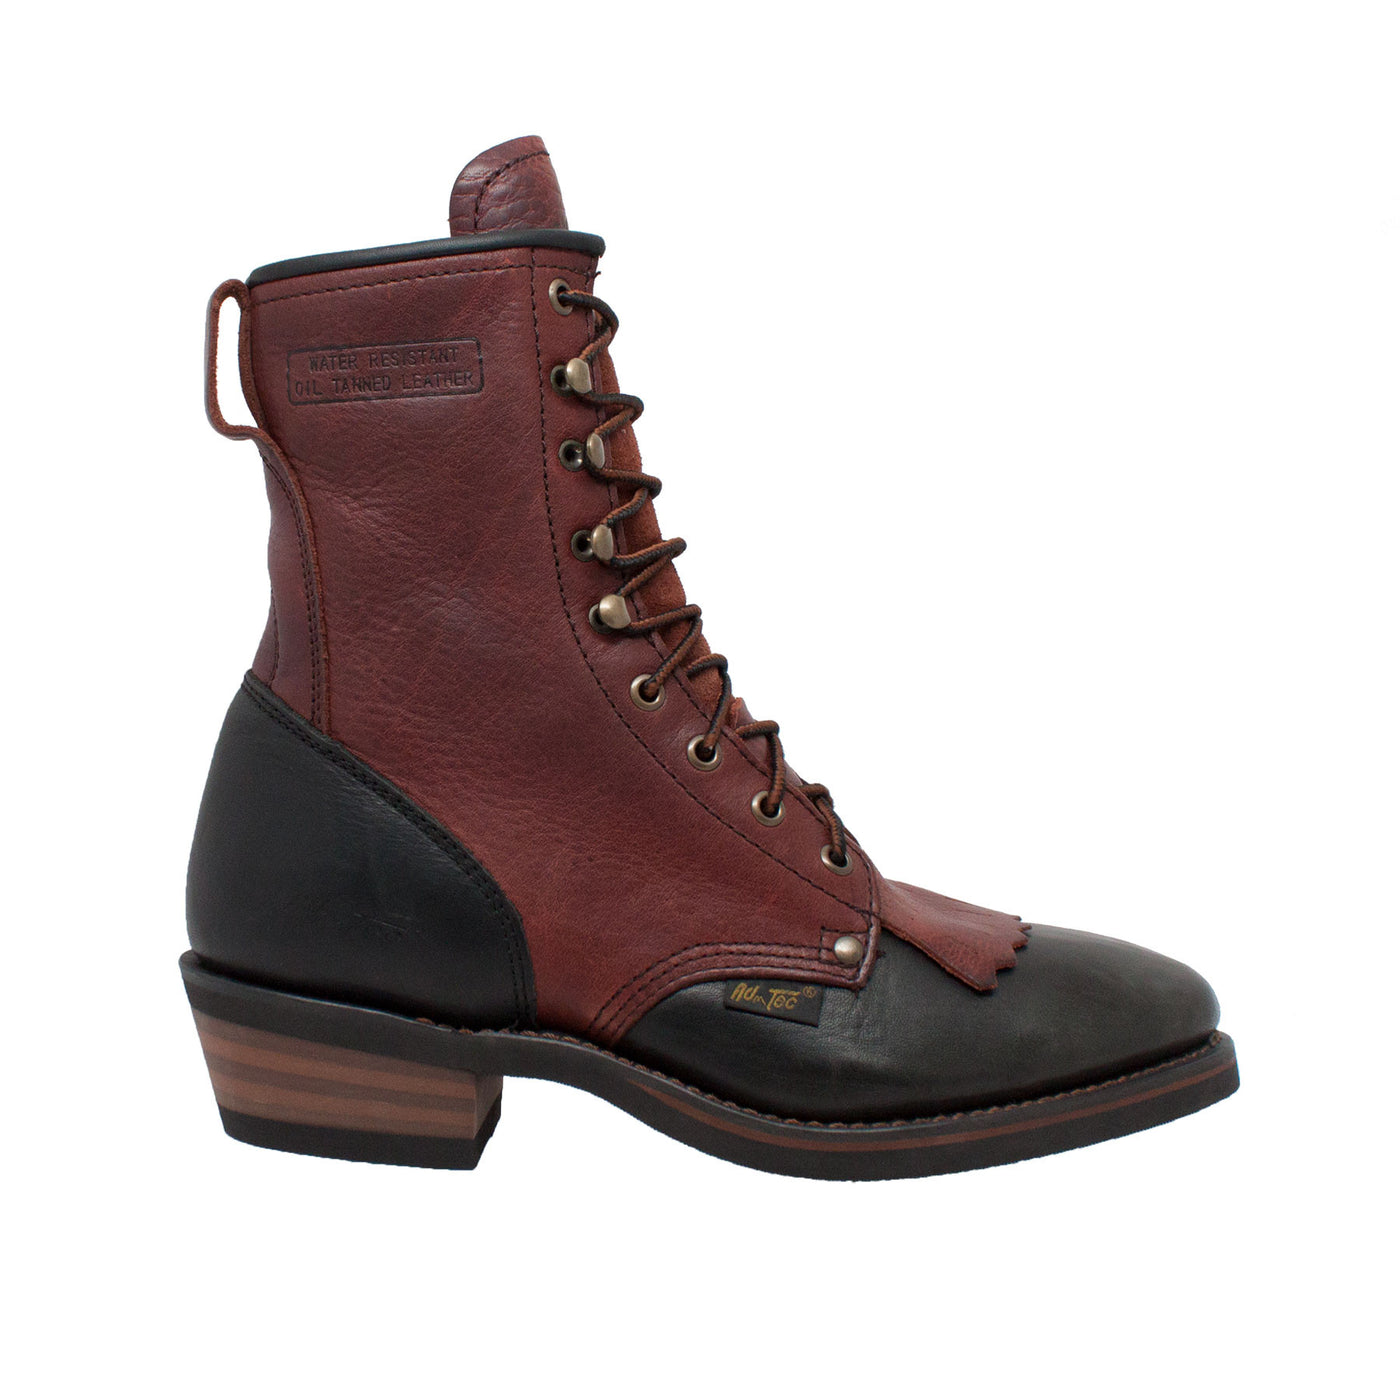 Men's 9" Chestnut/Black Packer - 1179 - Shop Genuine Leather men & women's boots online | AdTecFootWear